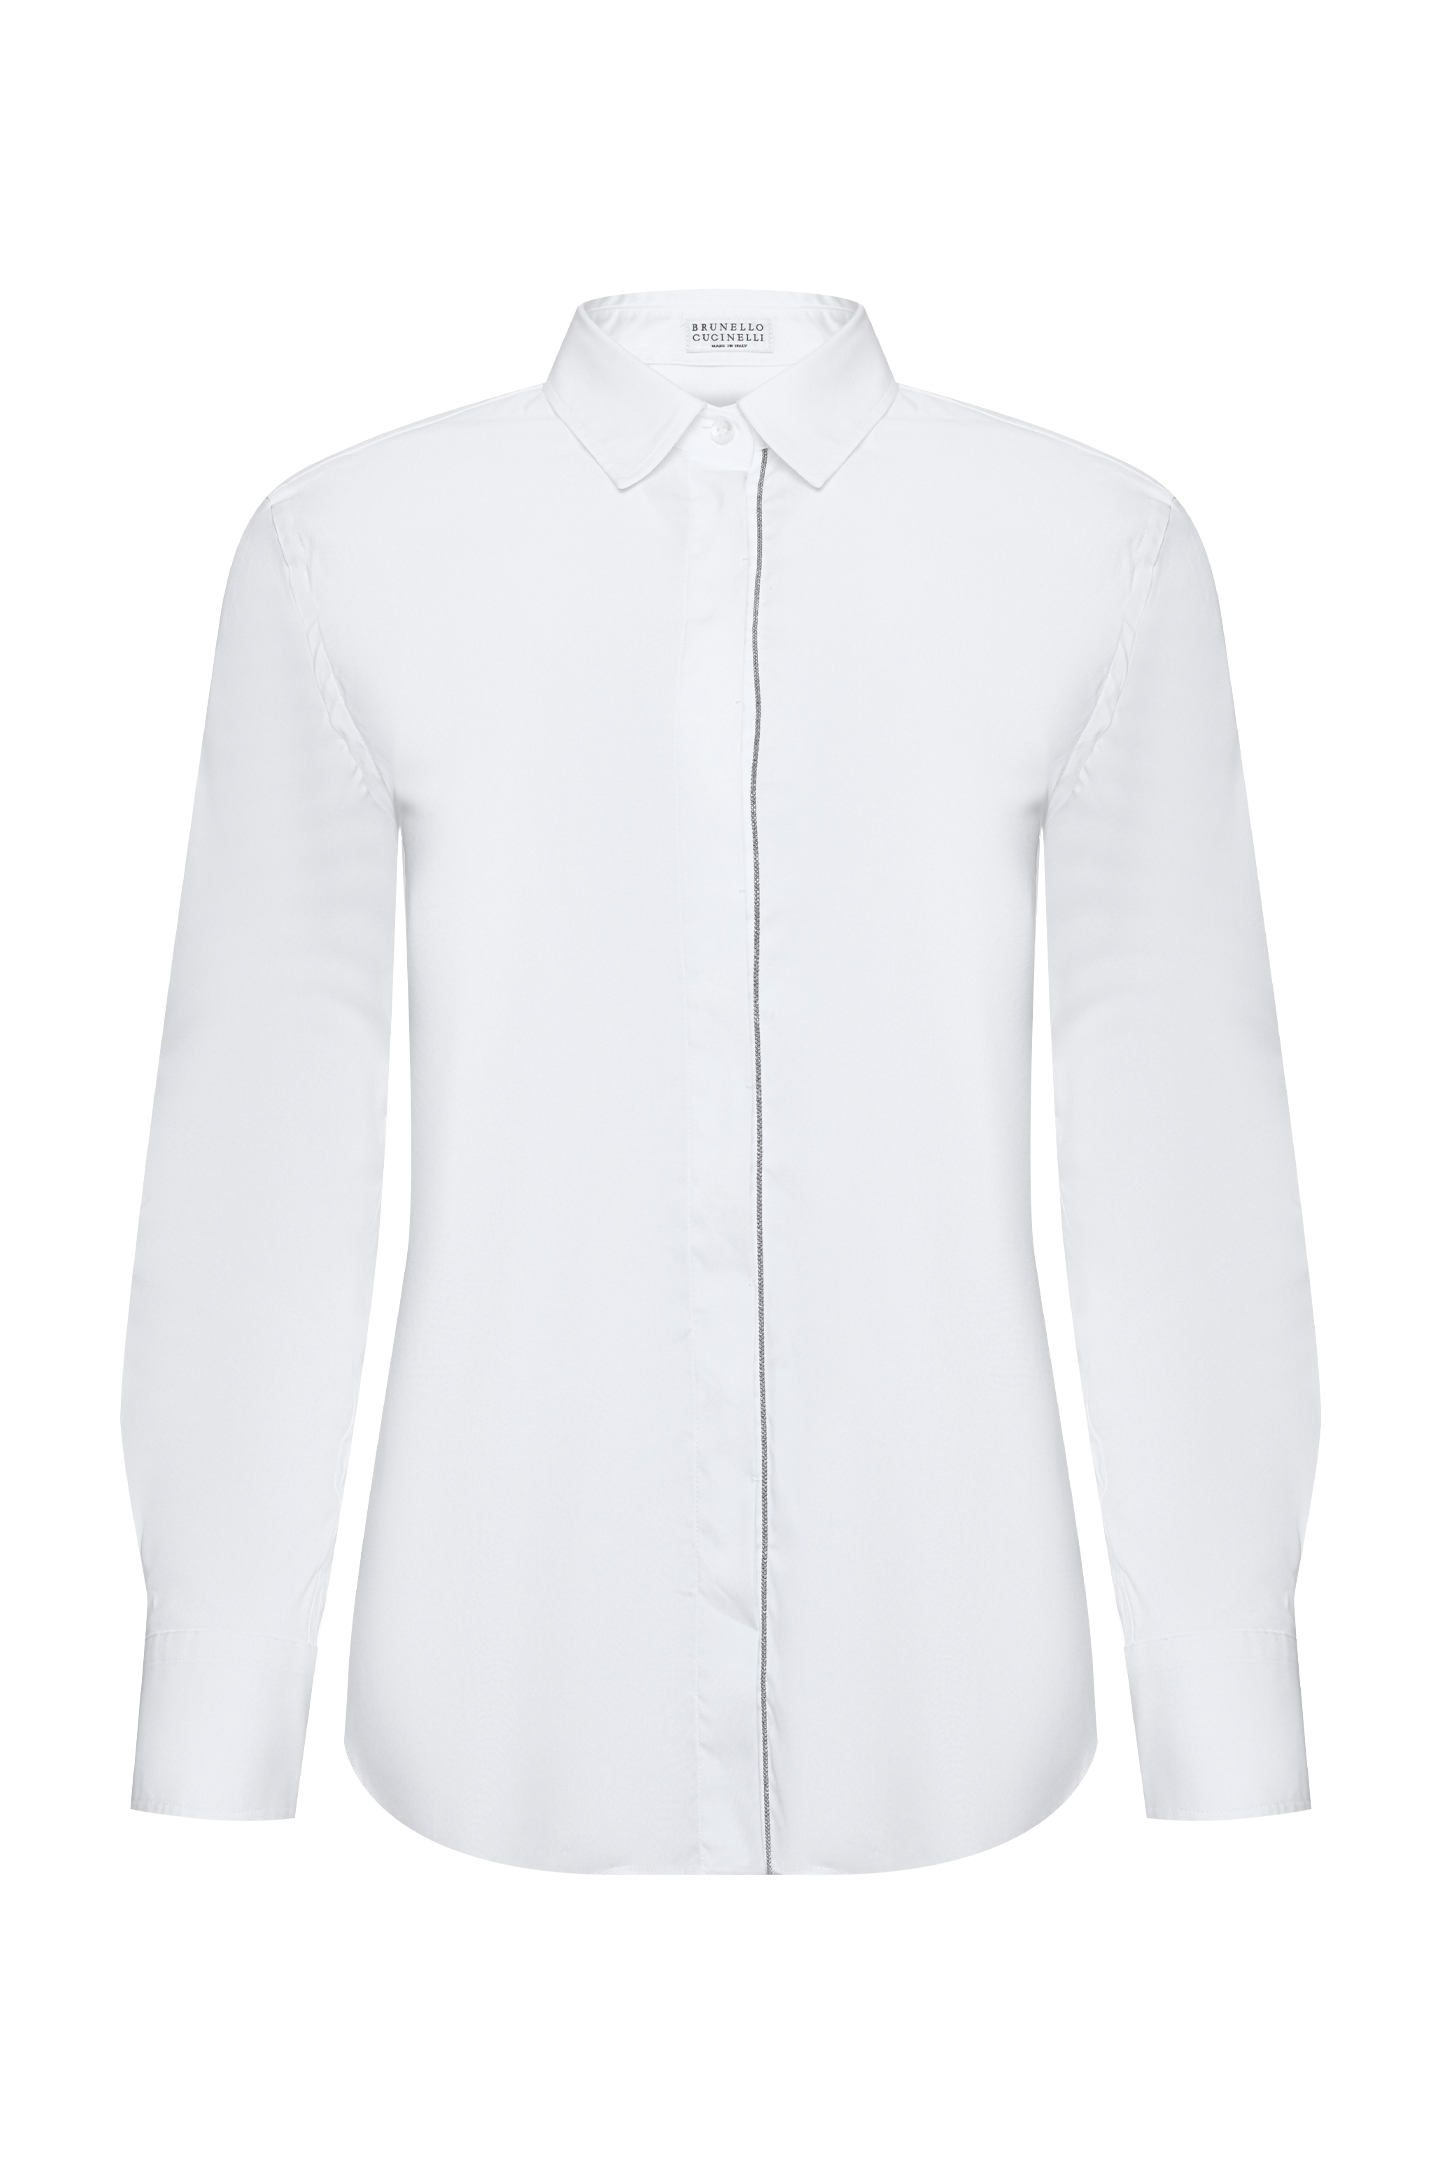 Рубашка BRUNELLO  CUCINELLI M0091MA206, цвет: Белый, Женский